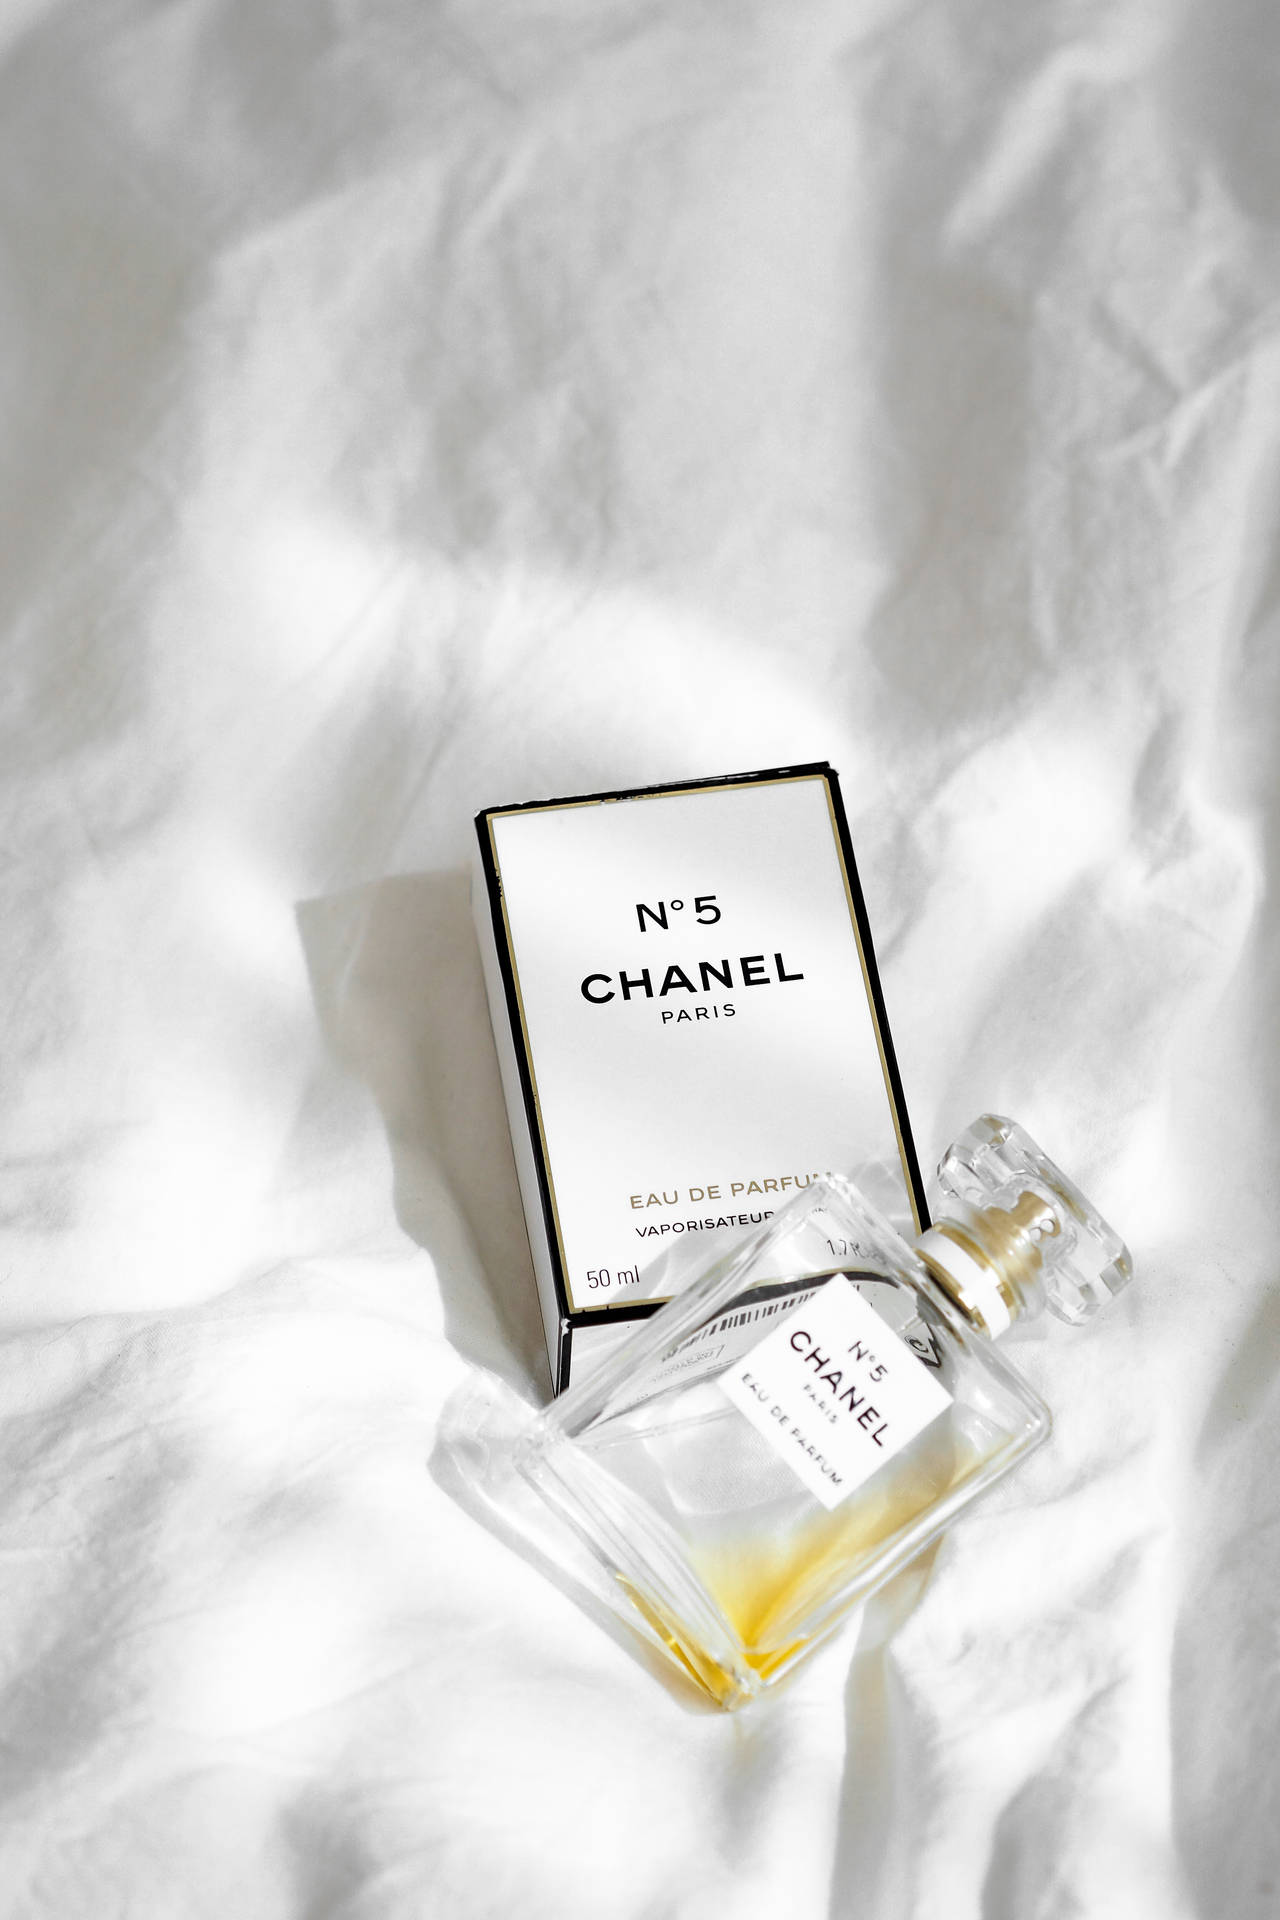 Chanel No. 5 Perfume Empty Bottle Wallpaper